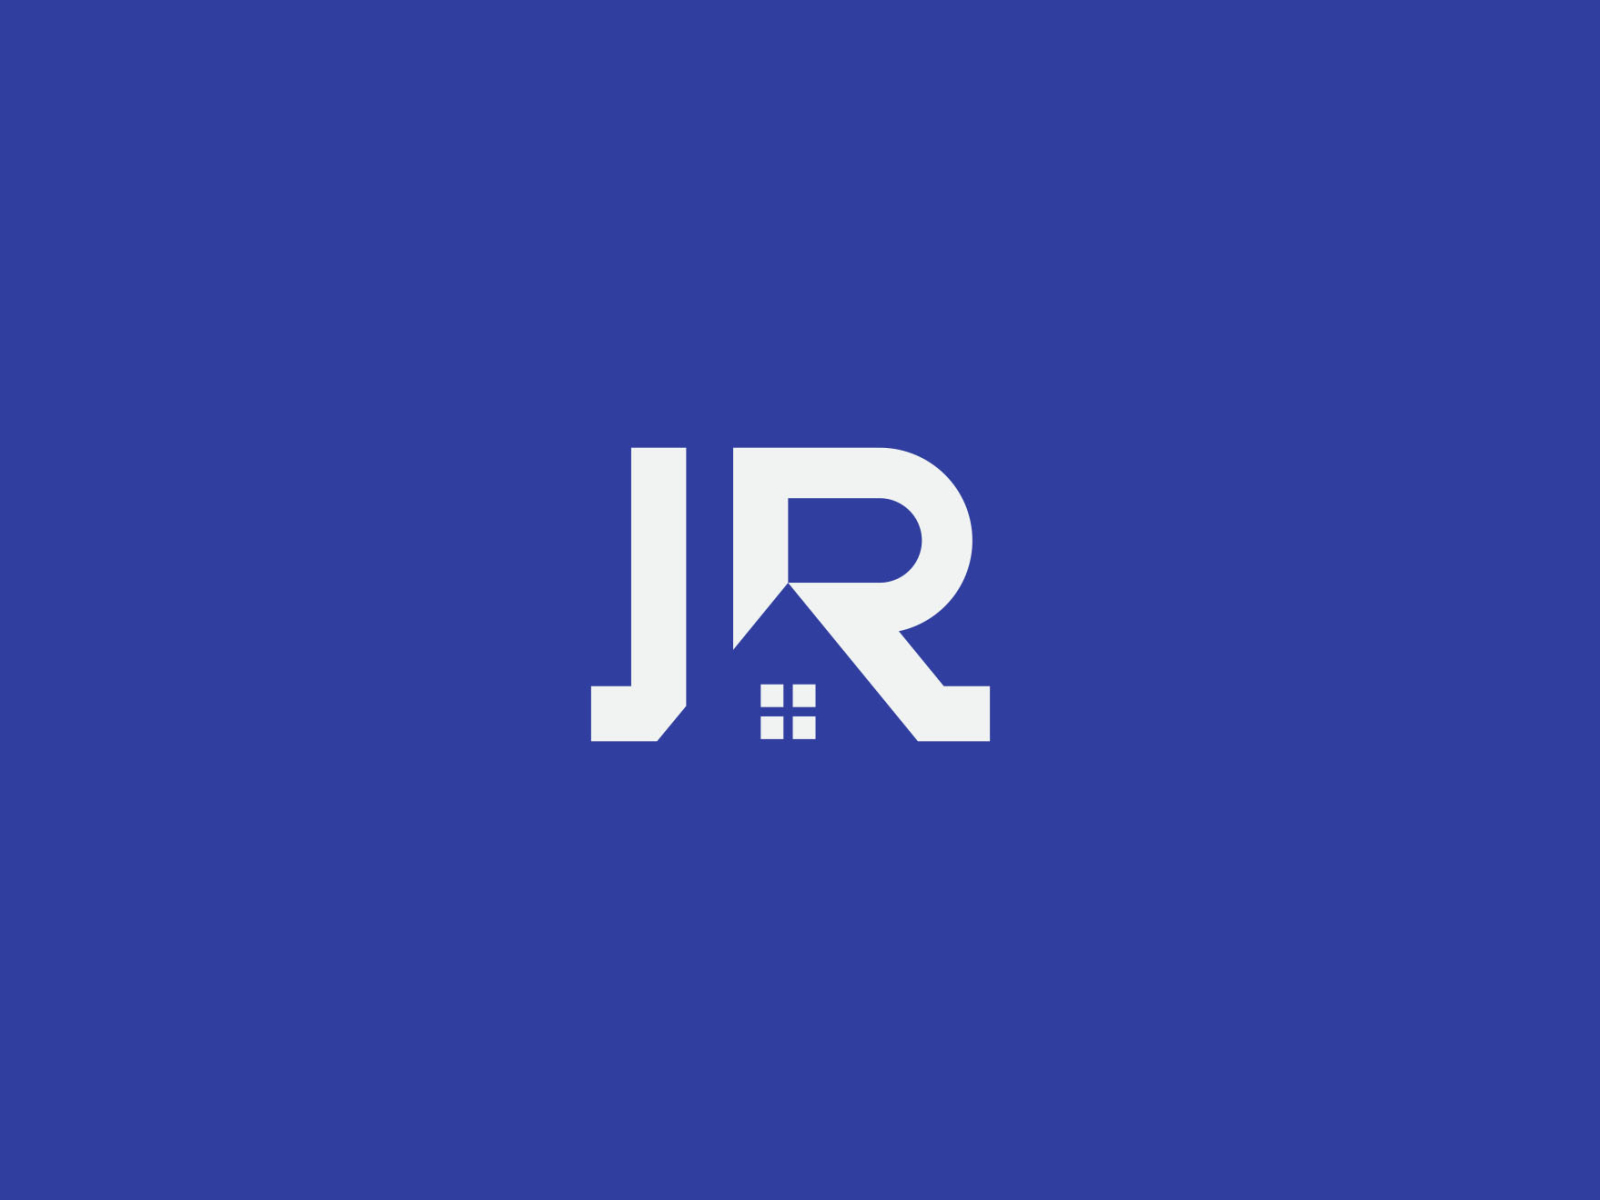 Logo design for letters jr | Logo design contest | 99designs